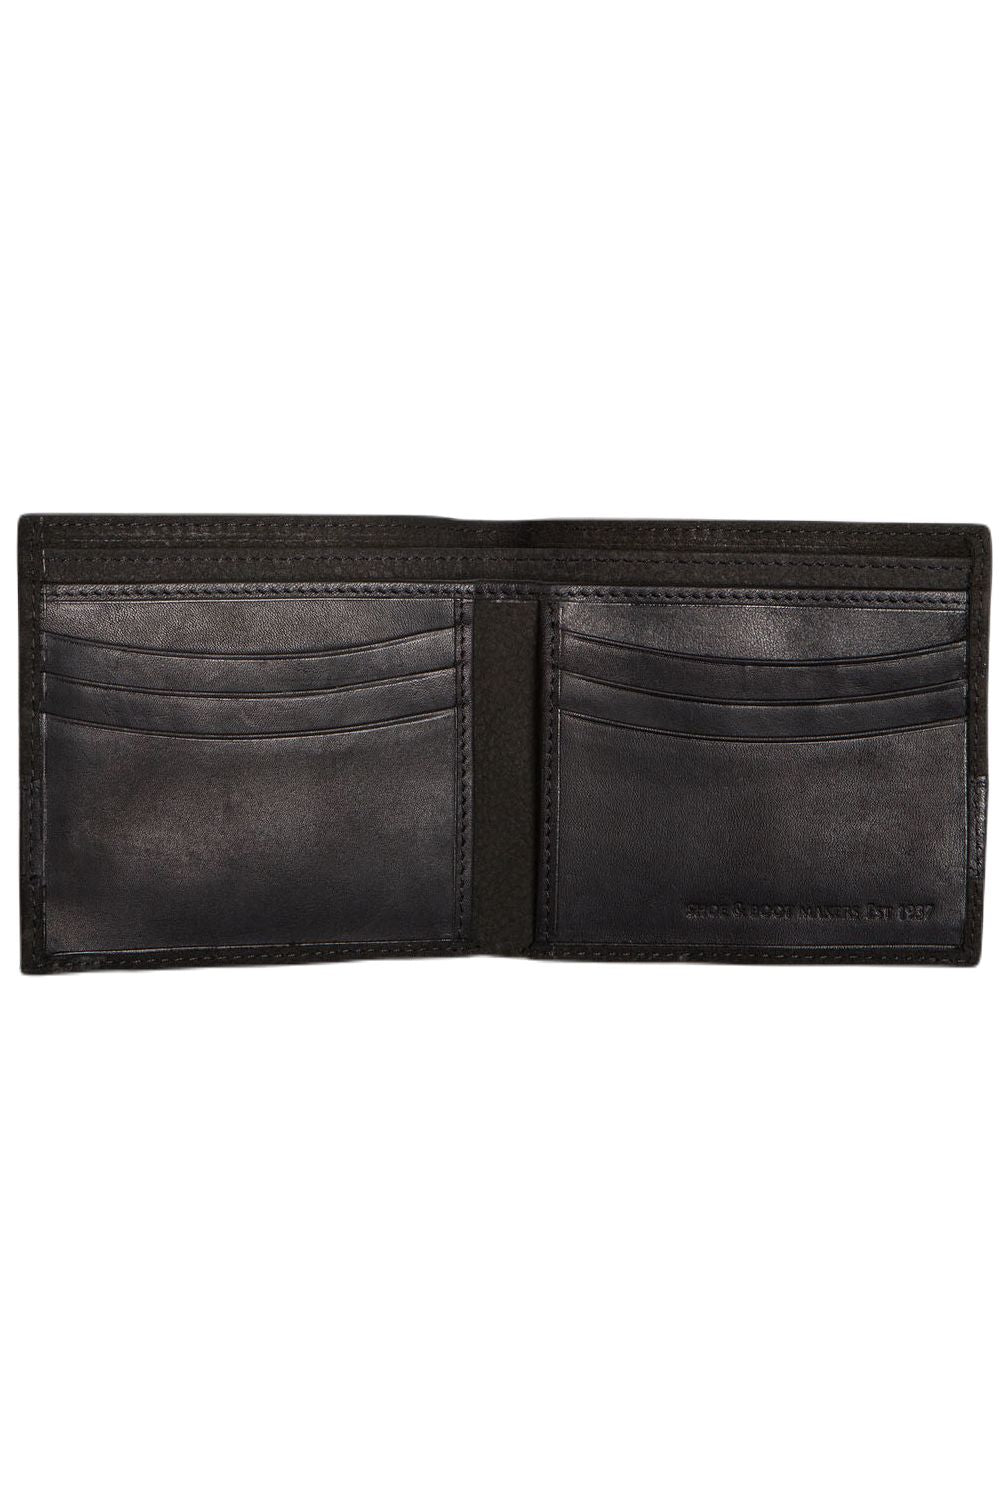 Dubarry Grafton Wallet in Black